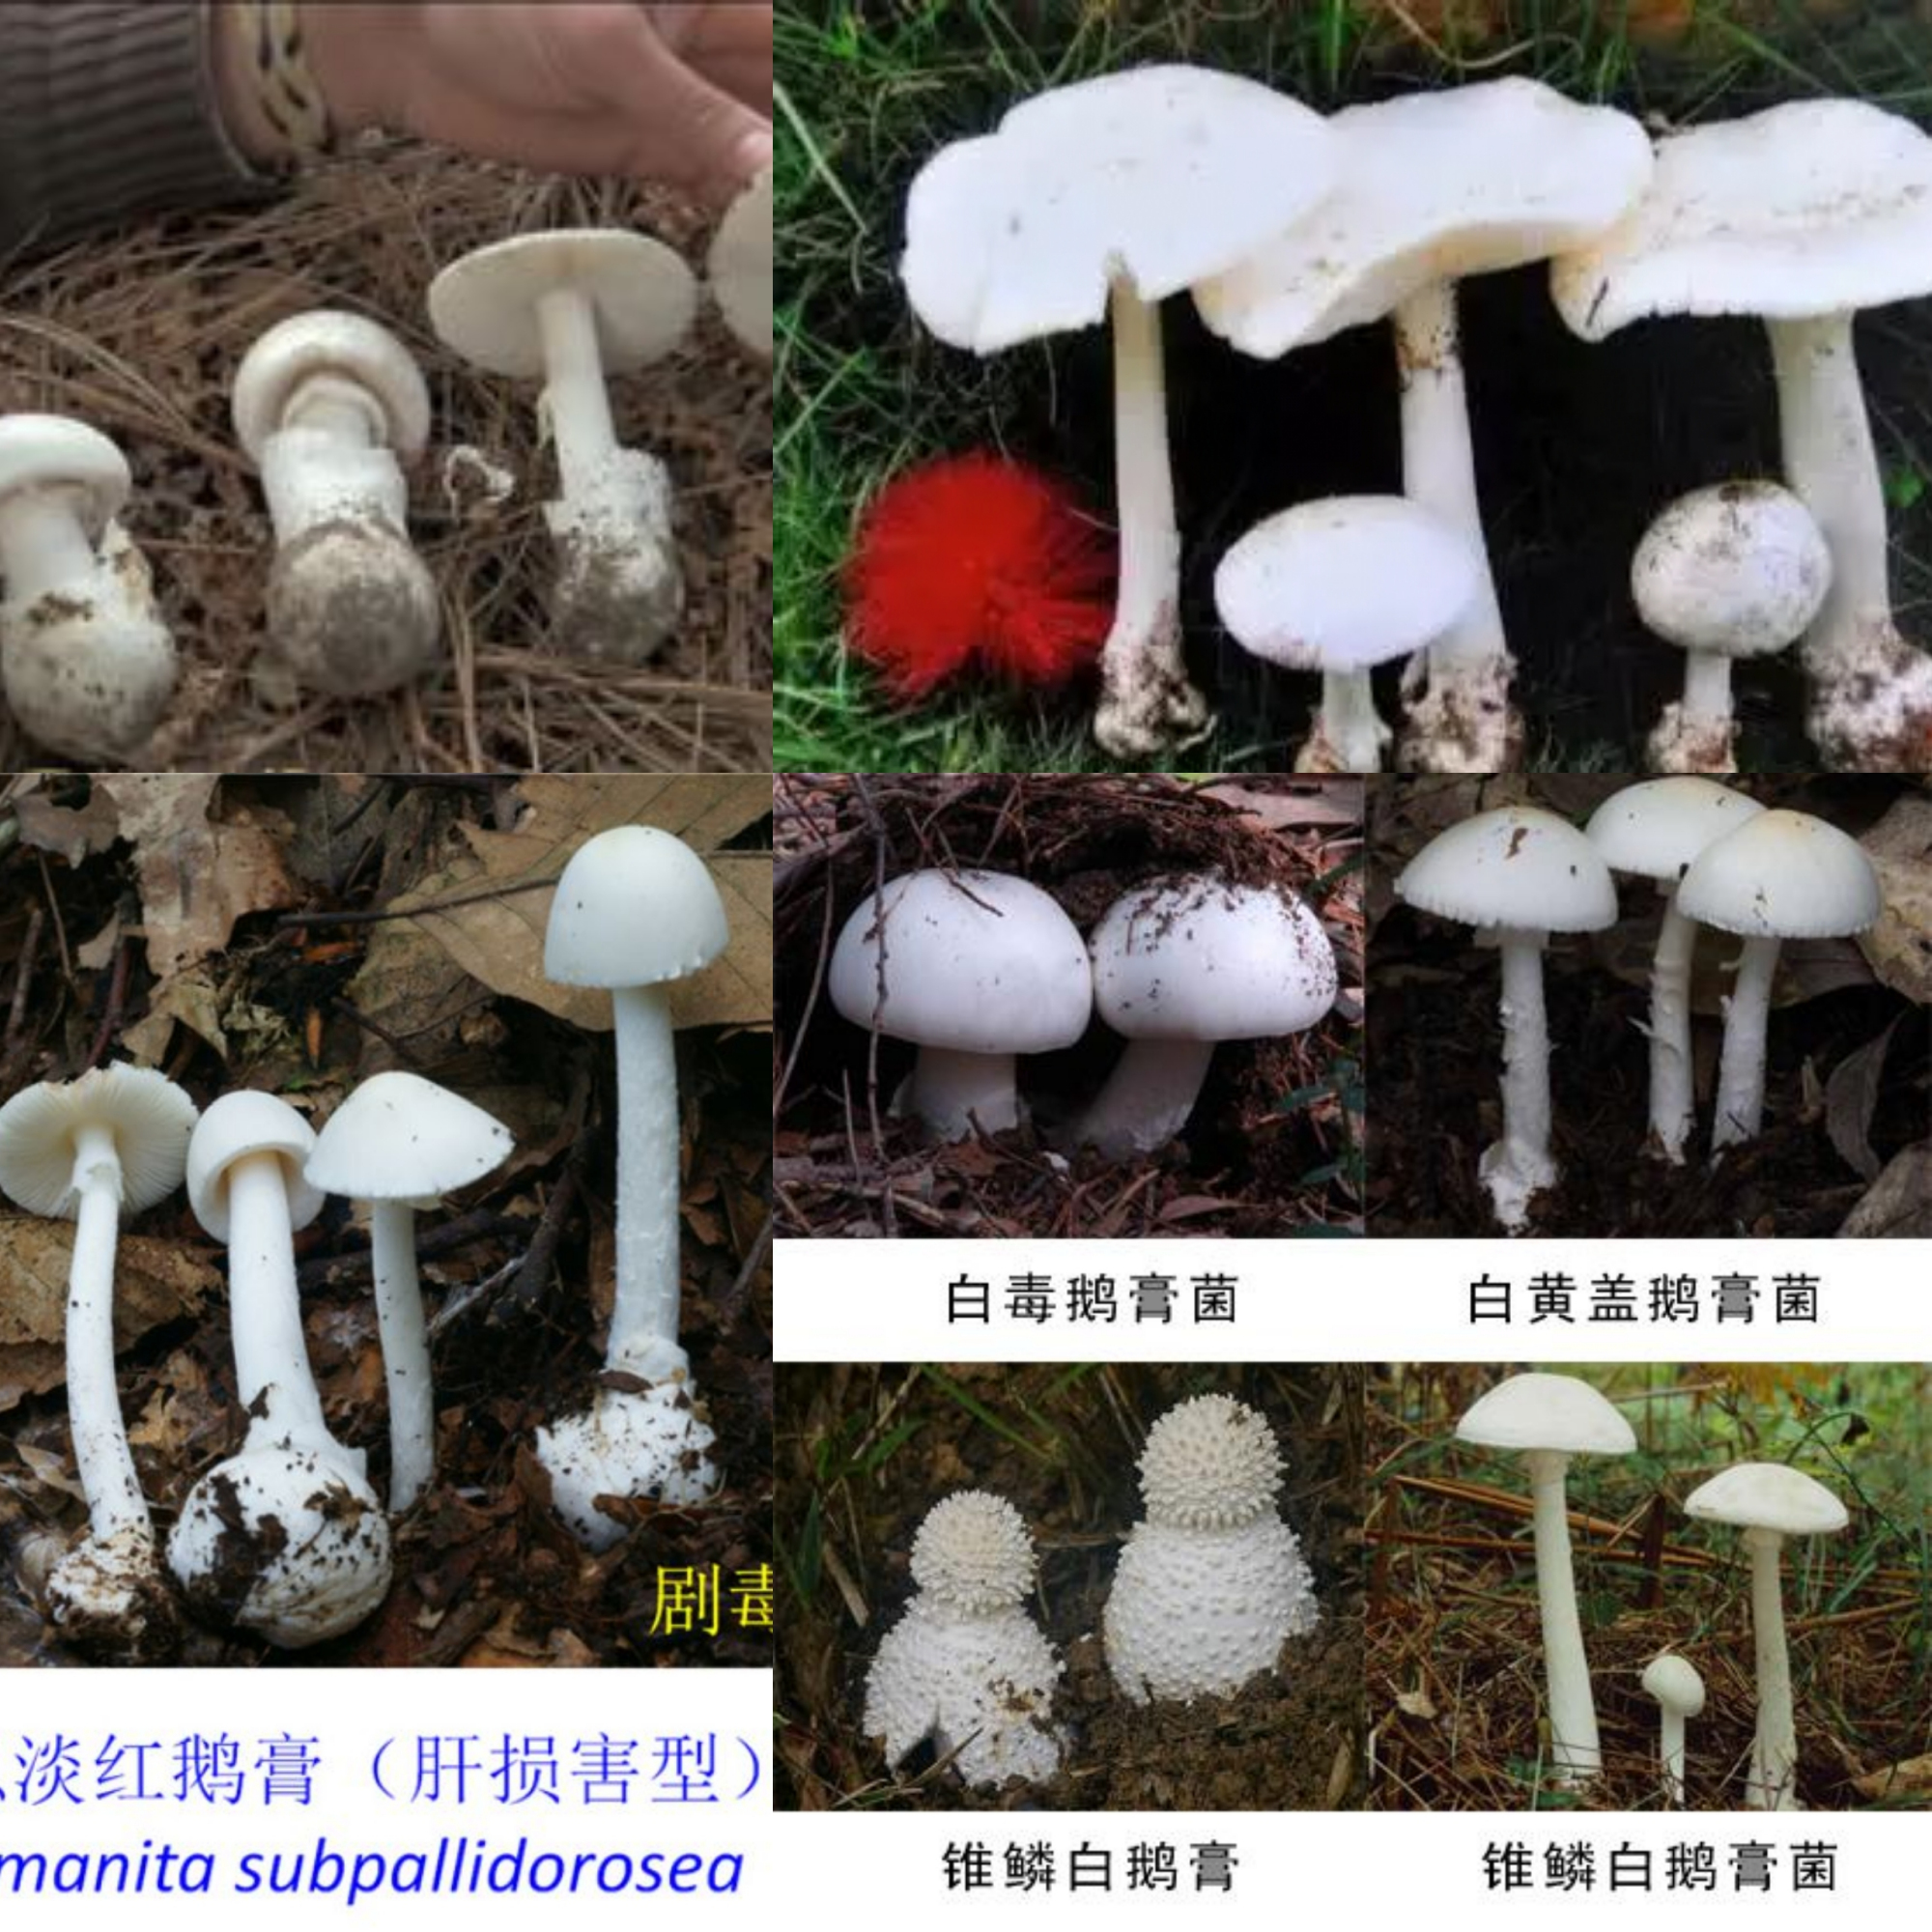 东北蘑菇图片及名称图片